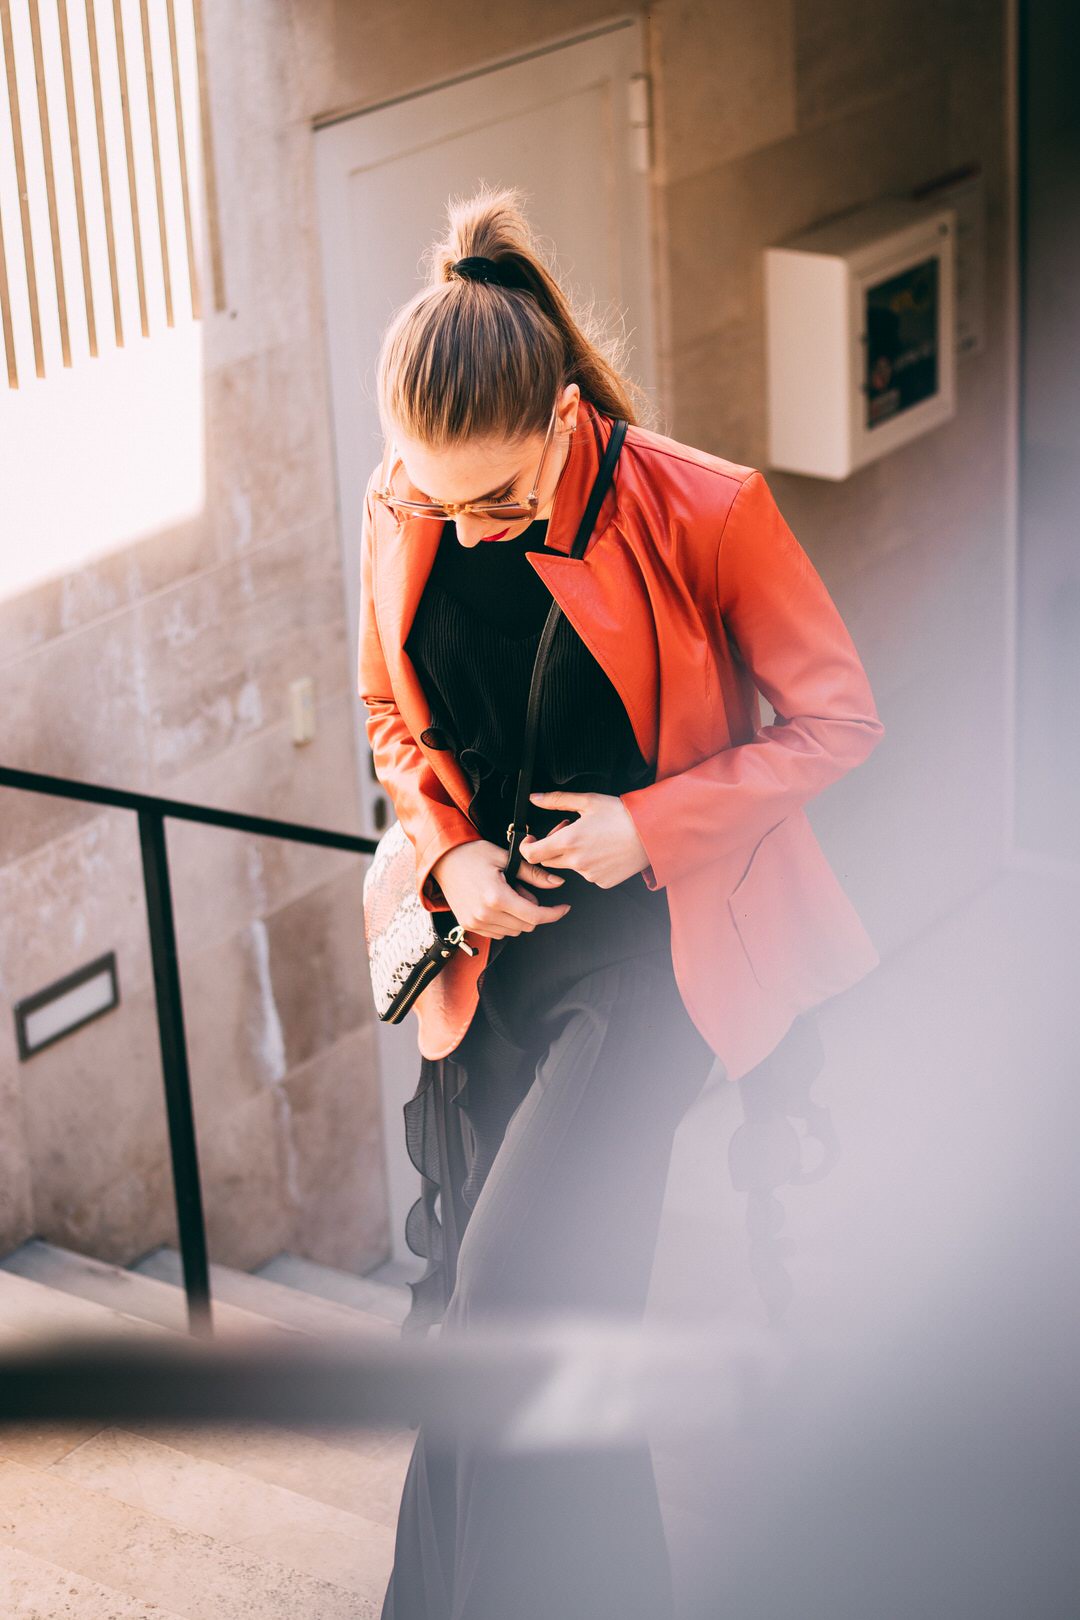 A woman walking up stairs wearing gun safe clothing